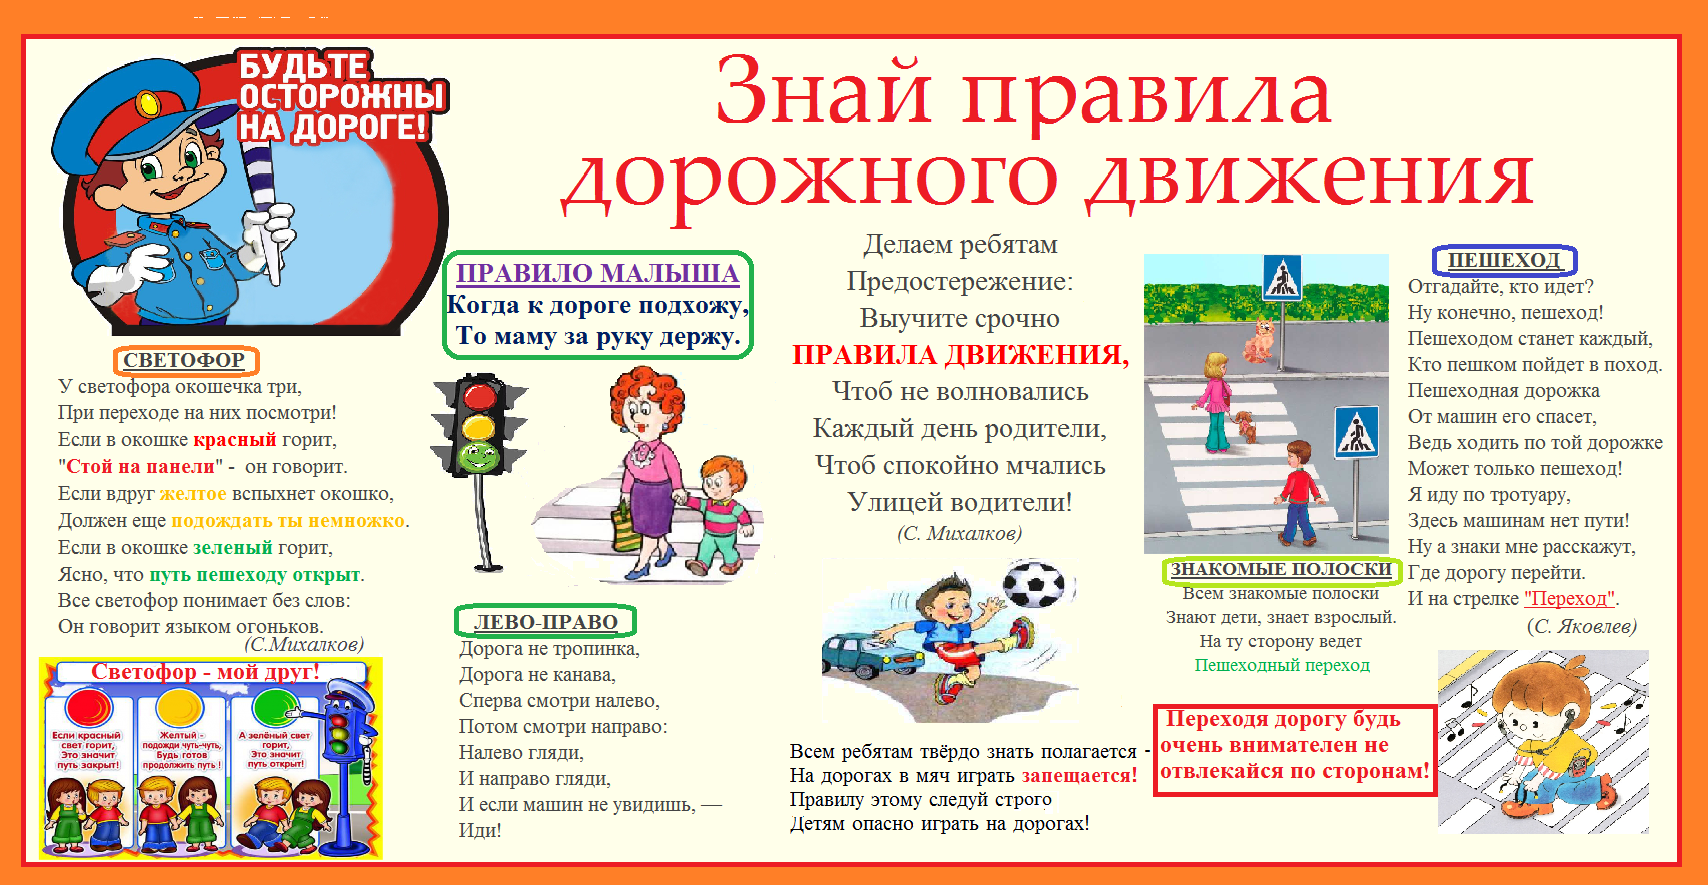 Про безопасность на дороге. Правила дорожного движения для детей. Плакат по правилам дорожного движения для школьников. Плакат по правилам дорожного движения для детей. ПДД правила дорожного движения.